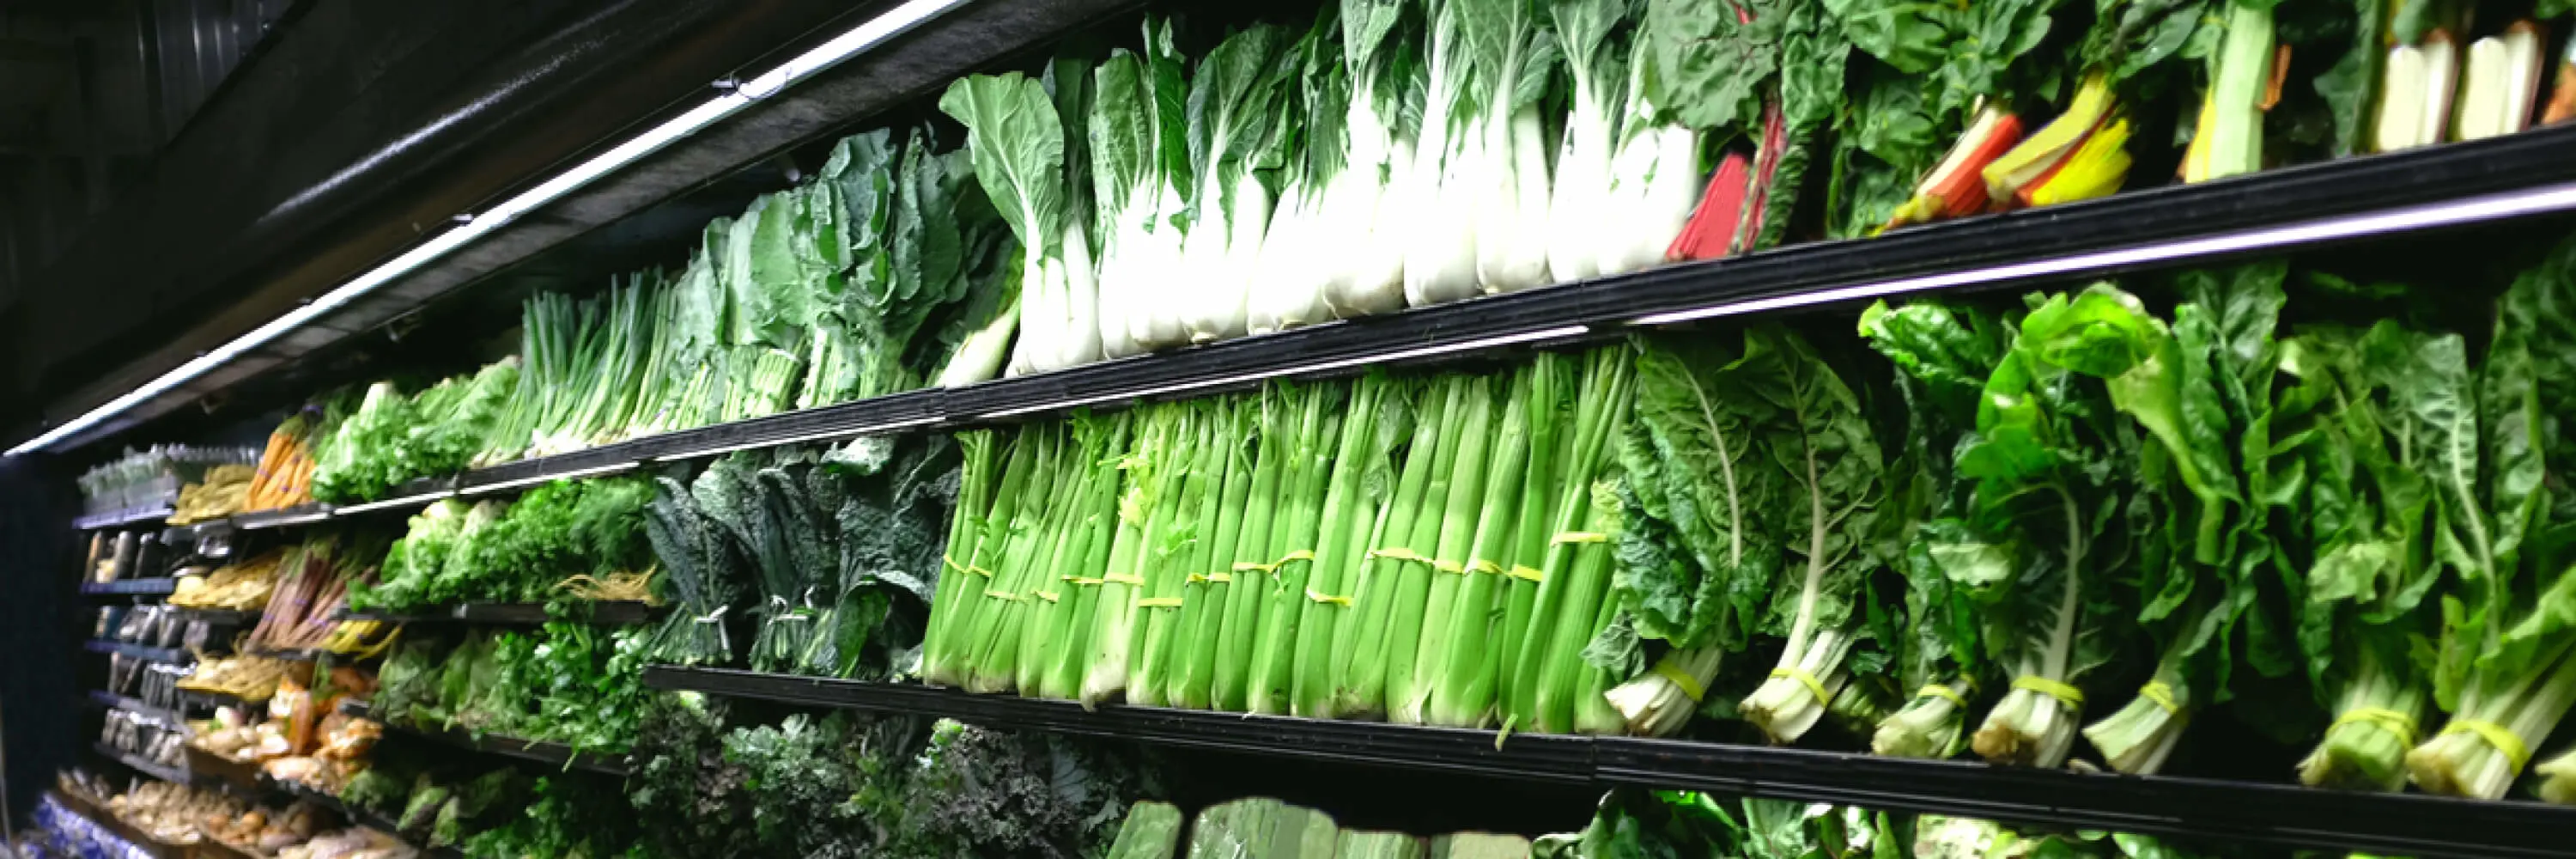 Un étalage de légumes dans une épicerie.